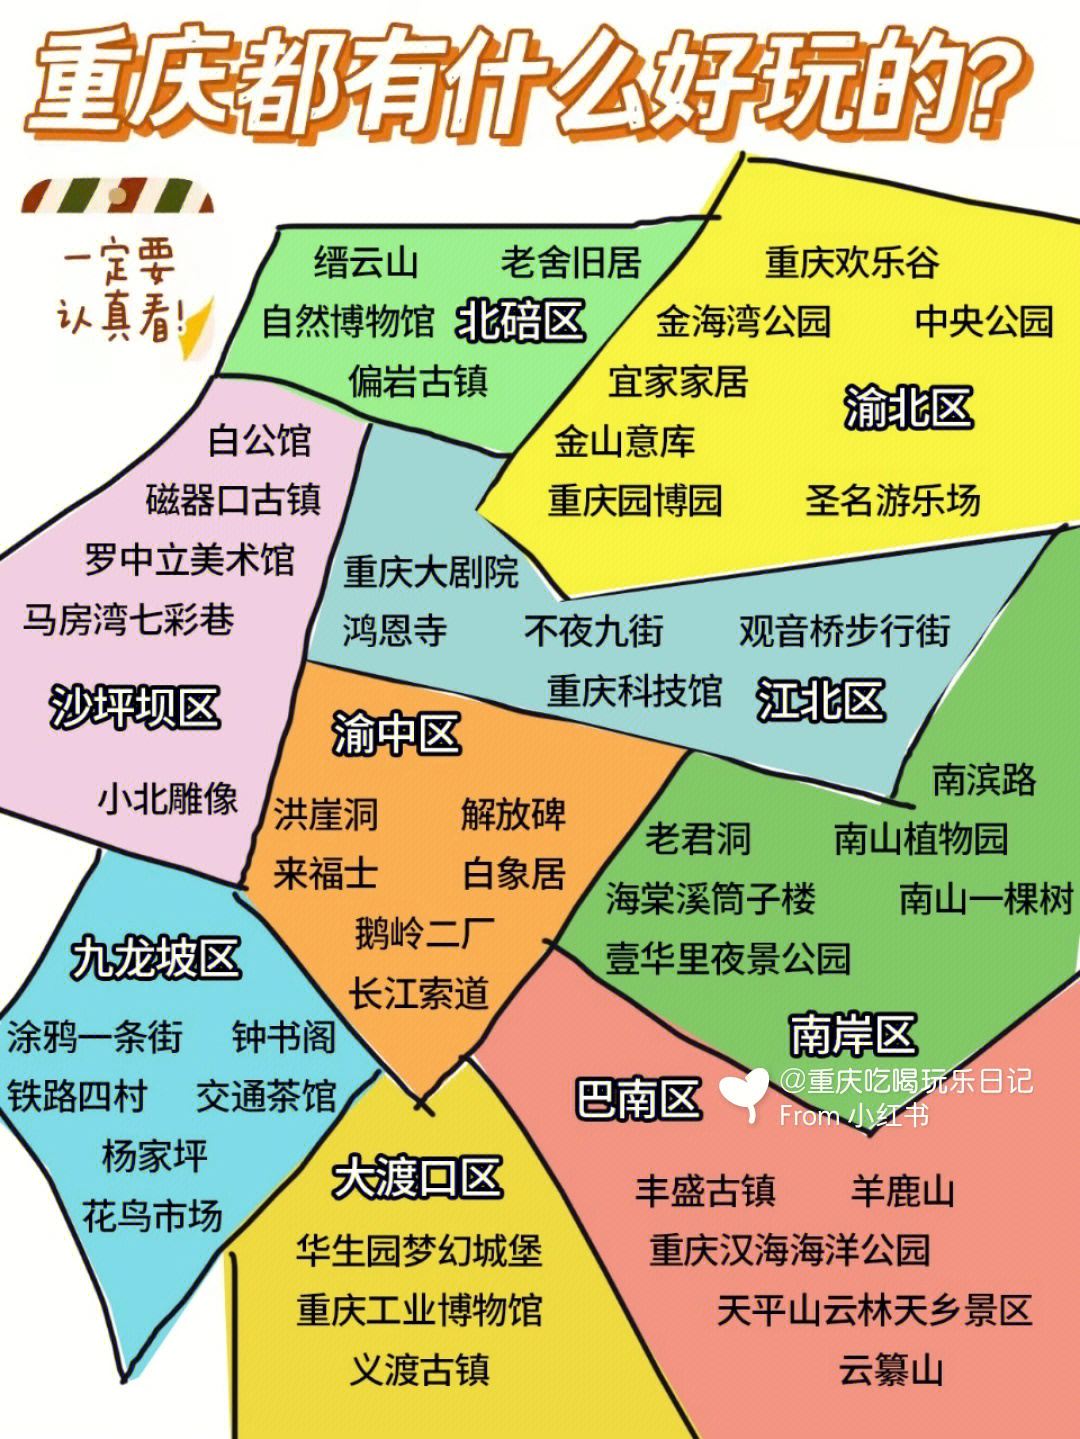 重庆九大区域地图图片